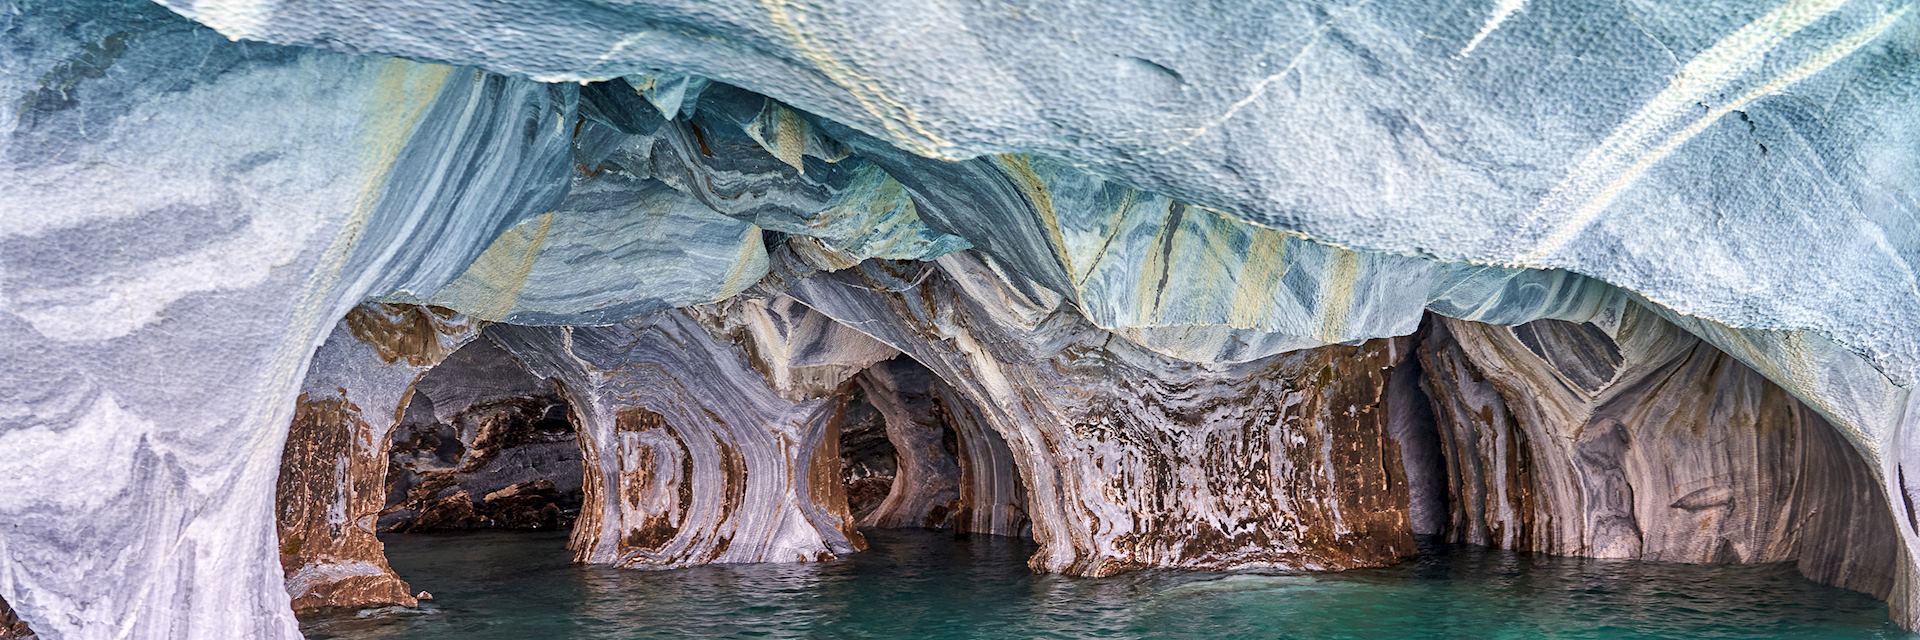 Marble Caves, Aysén